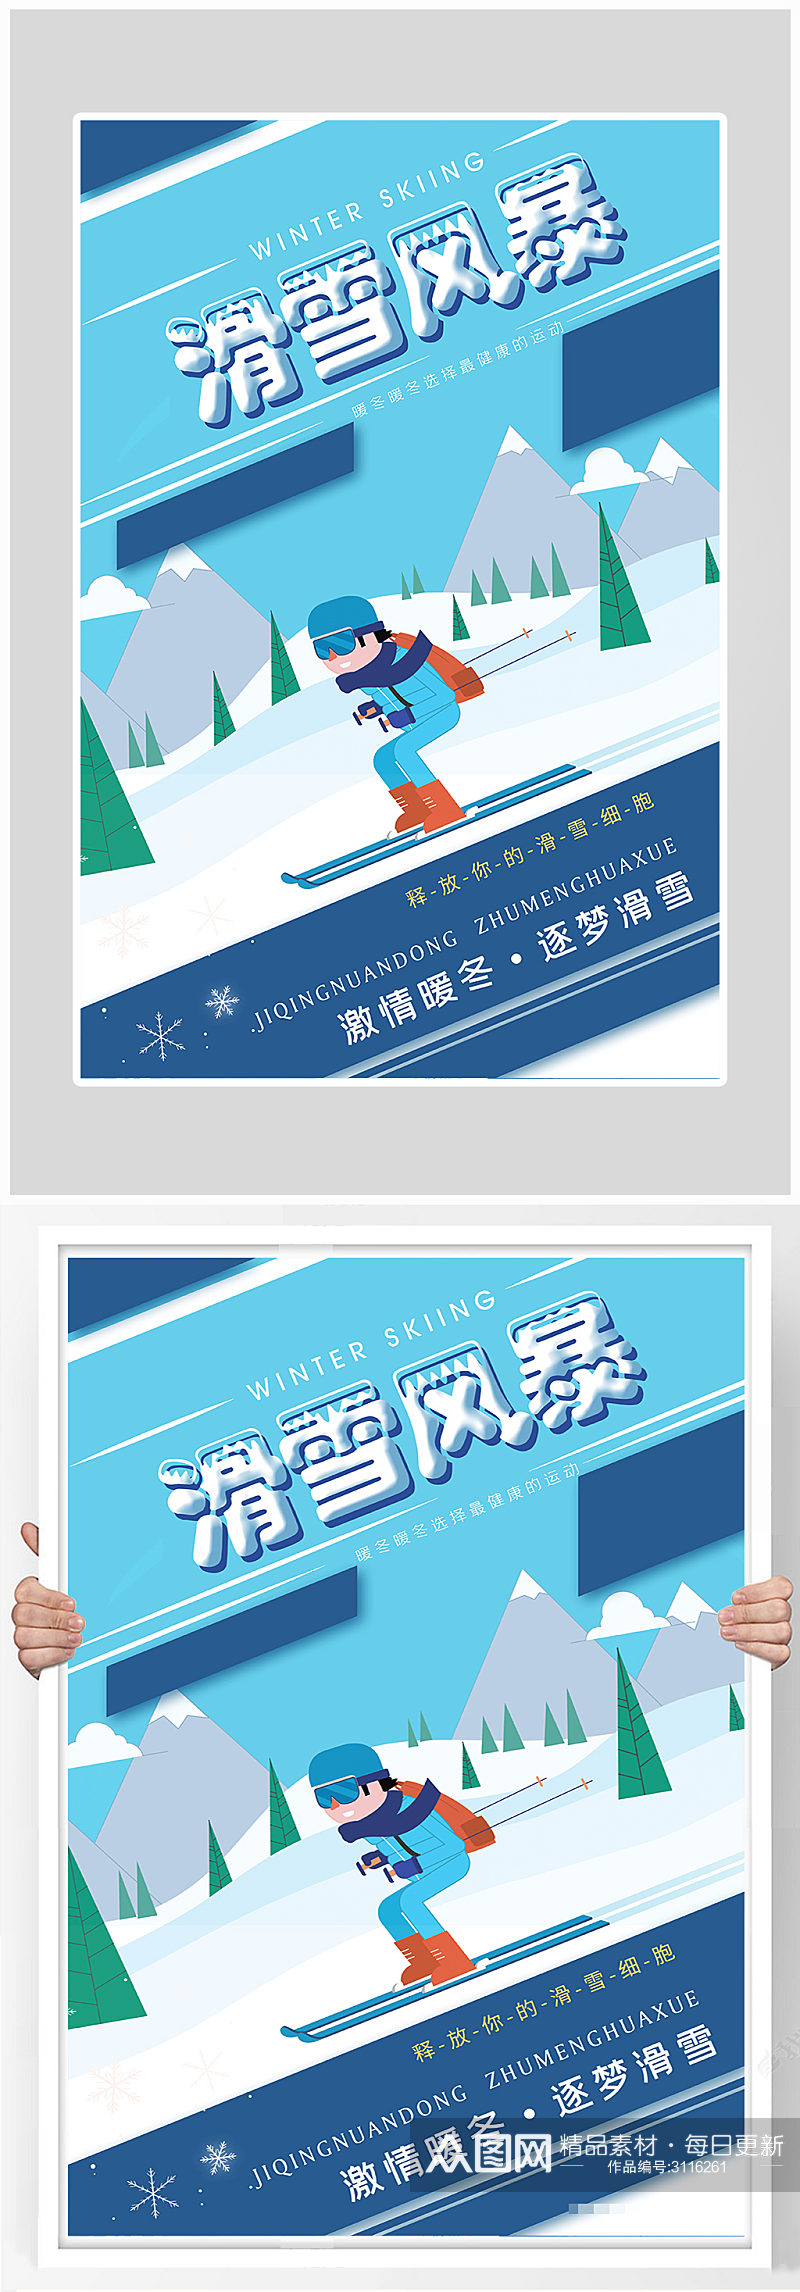 创意扁平化滑雪运动海报设计素材